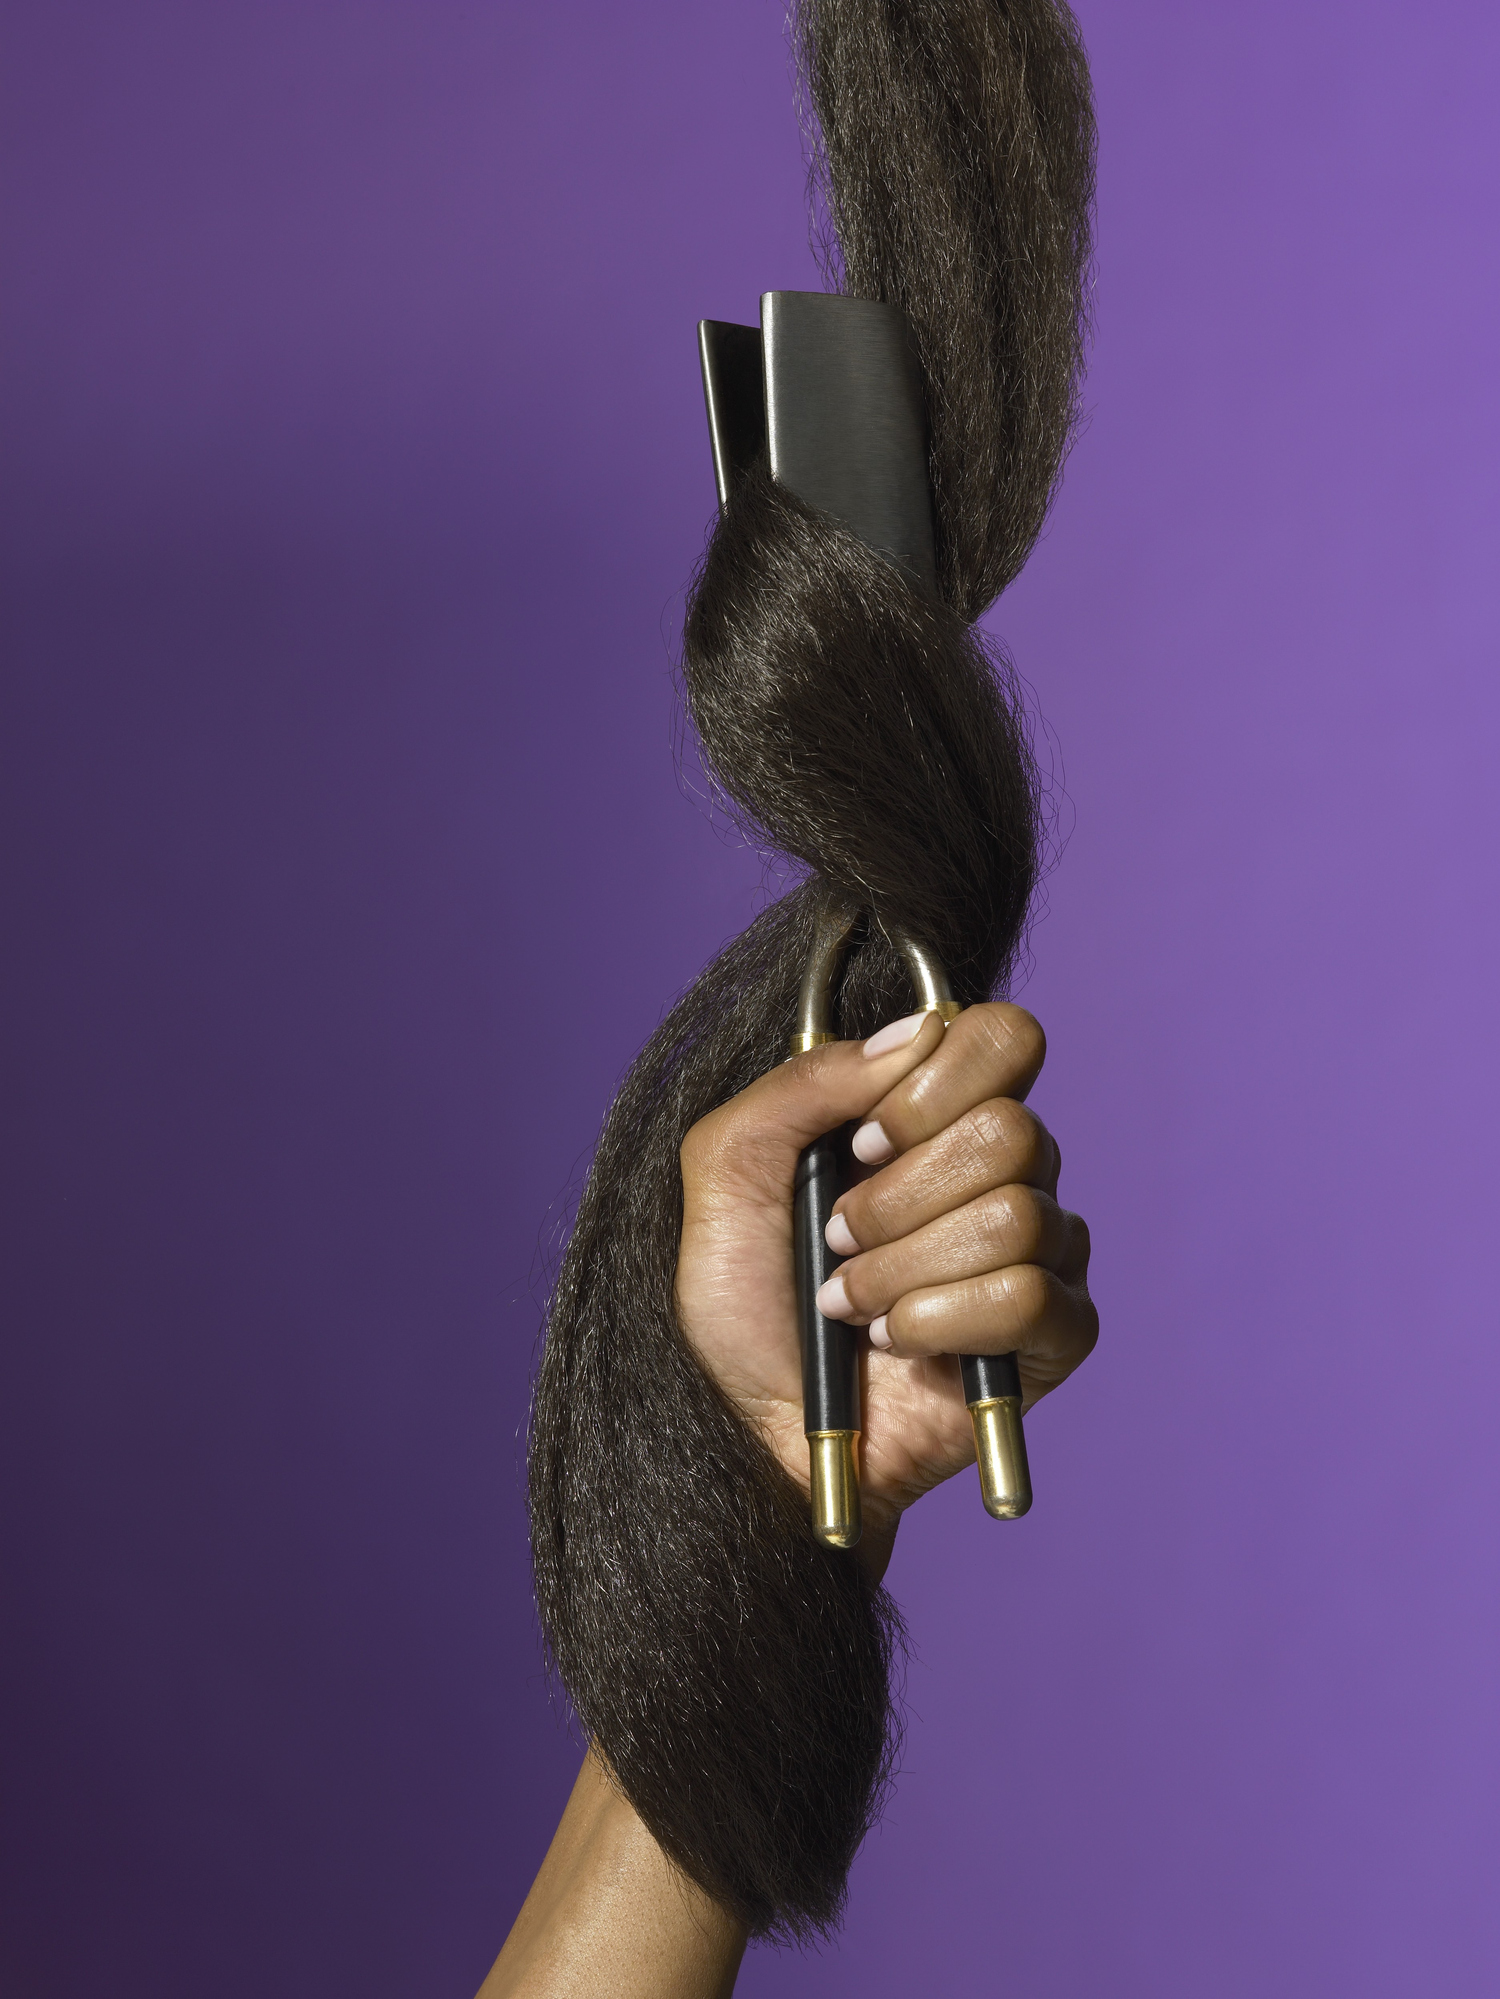 gorilla glue in hair